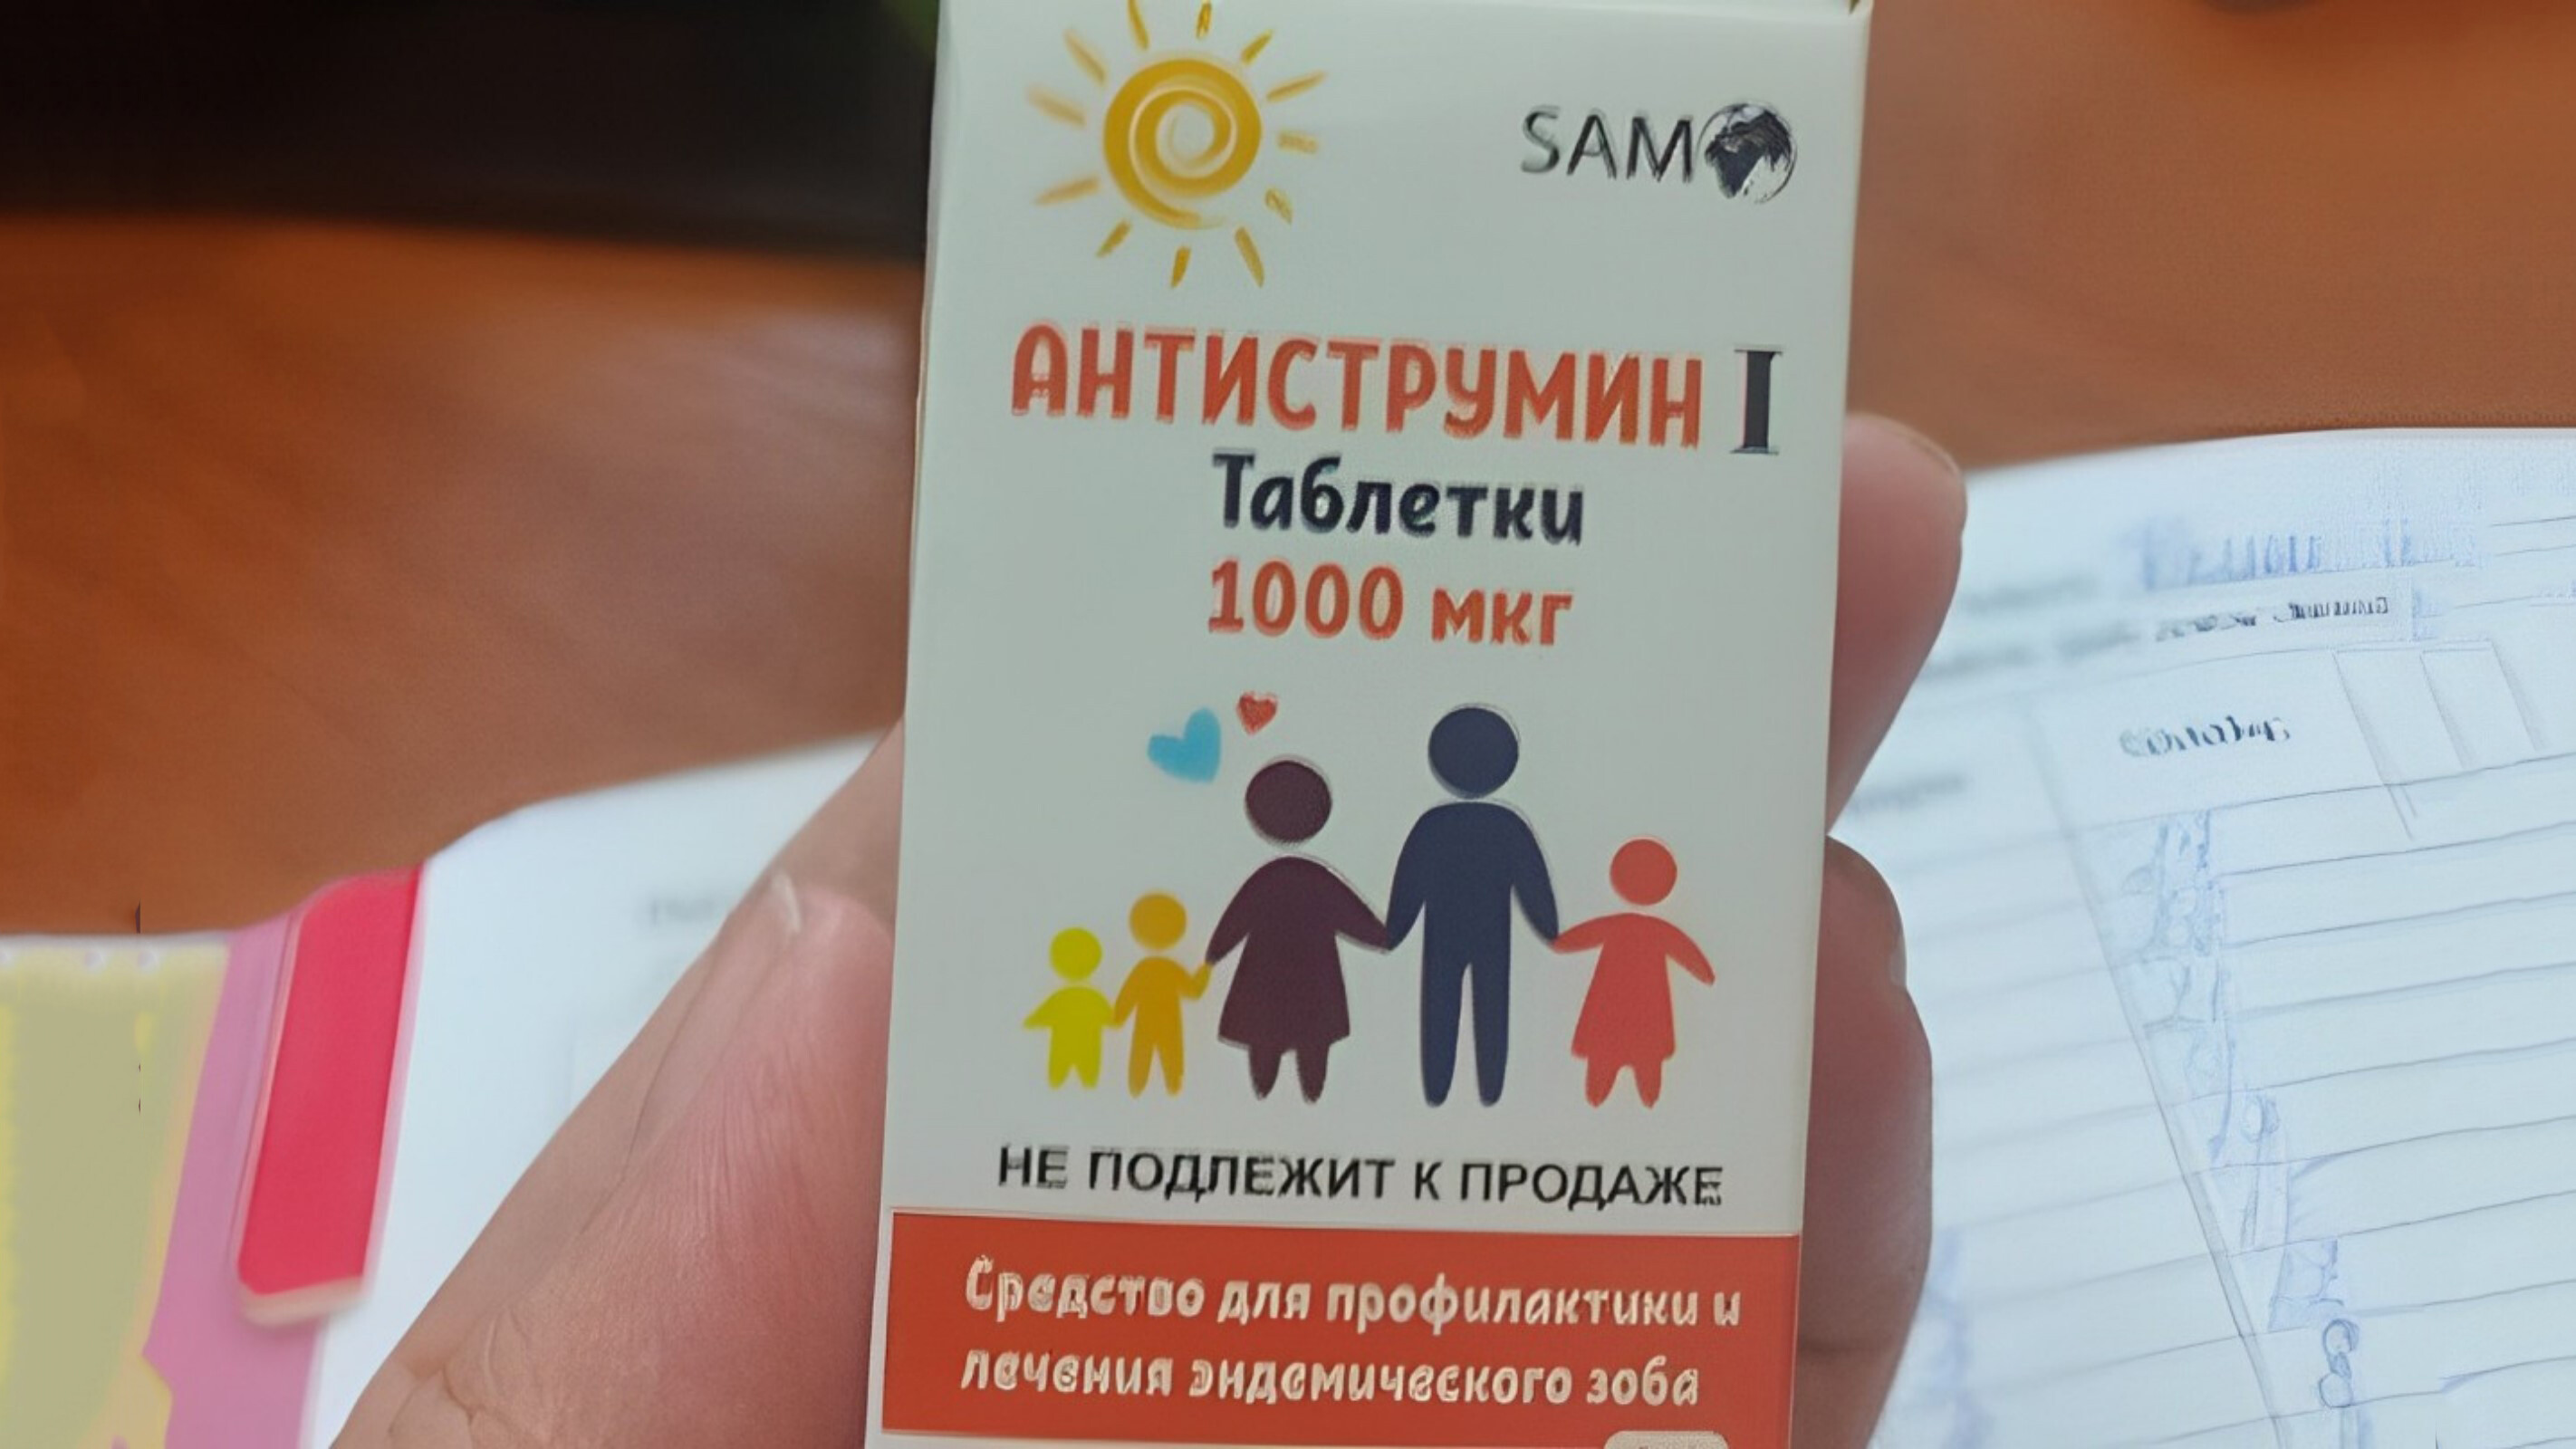 Лицензия компании SAMO — производителя препарата йода, который раздавали школьникам, приостановлена